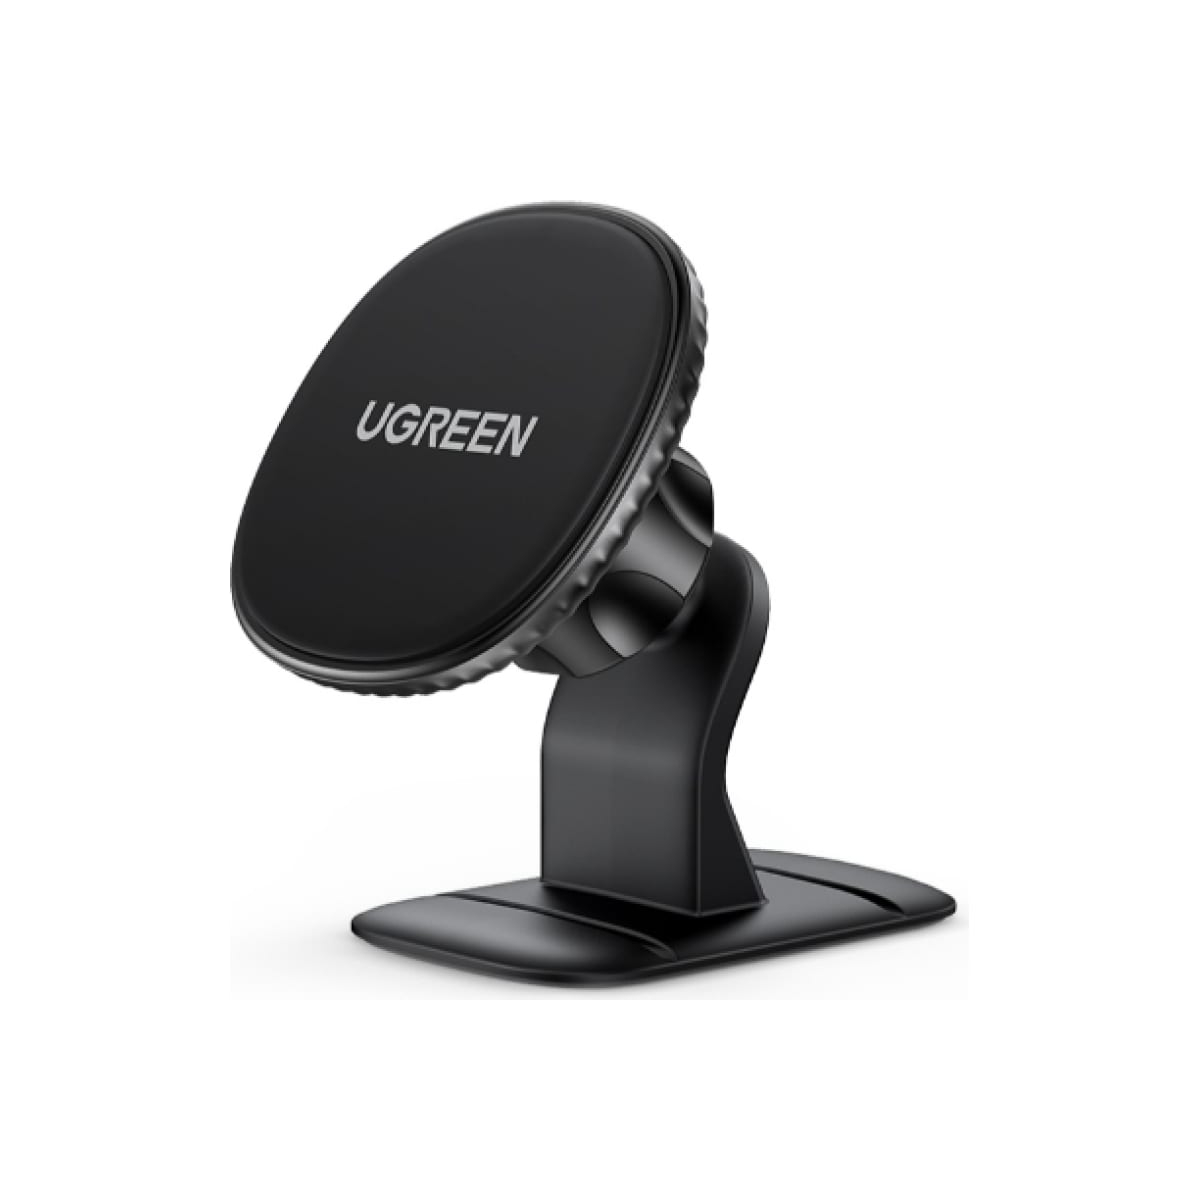 Автомобильный держатель для телефона UGREEN на панель, черный (80785) держатель автомобильный ugreen lp130 40907 черный